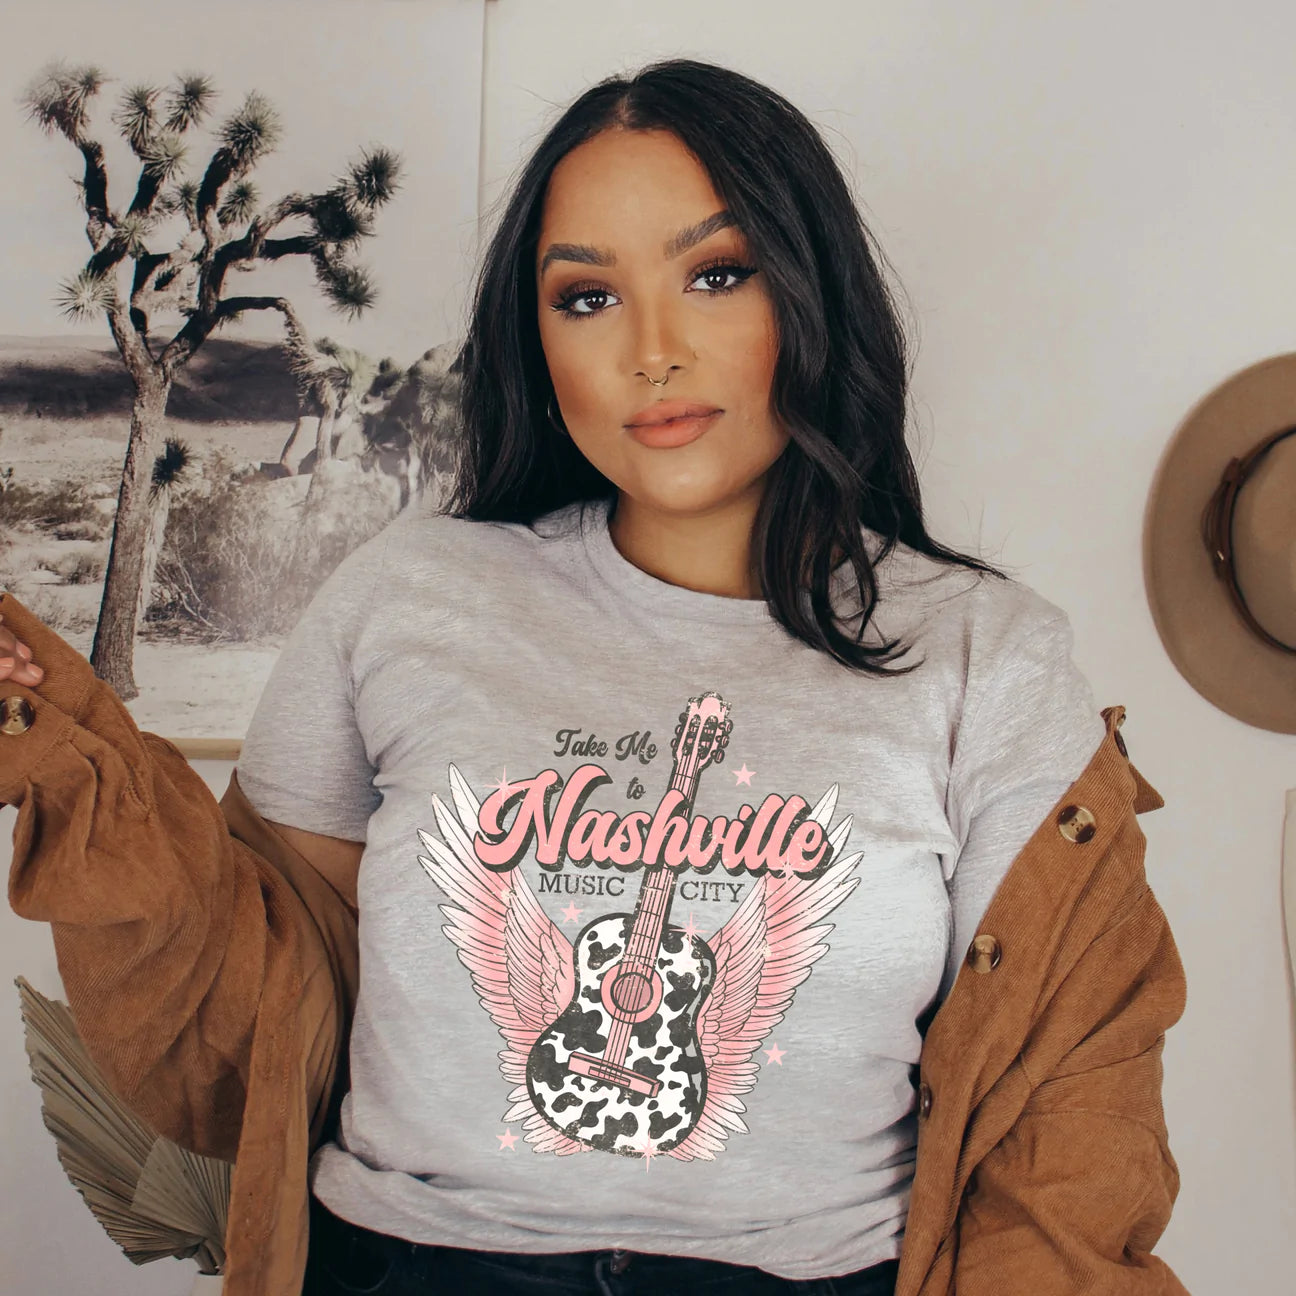 "Take Me to Nashville" Sweatshirt or T-shirt